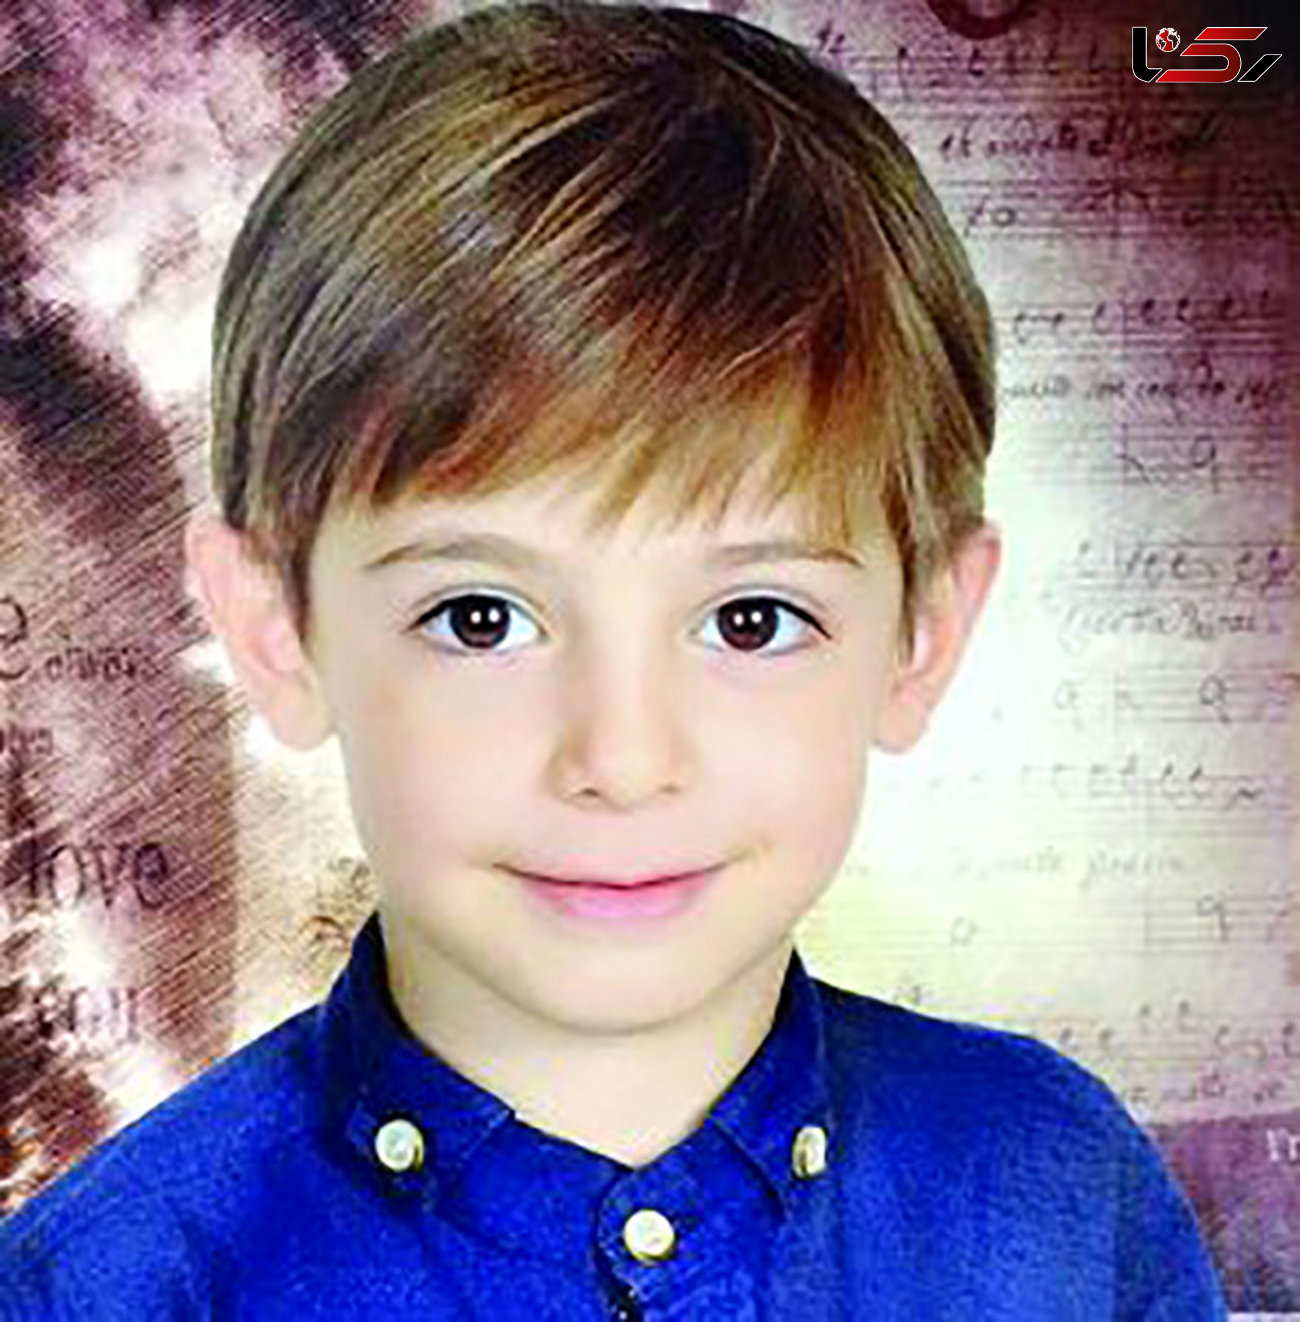  آرمان غیاثی پسر 8 ساله سنگنورد اصفهانی از بیمارستان مرخص شد